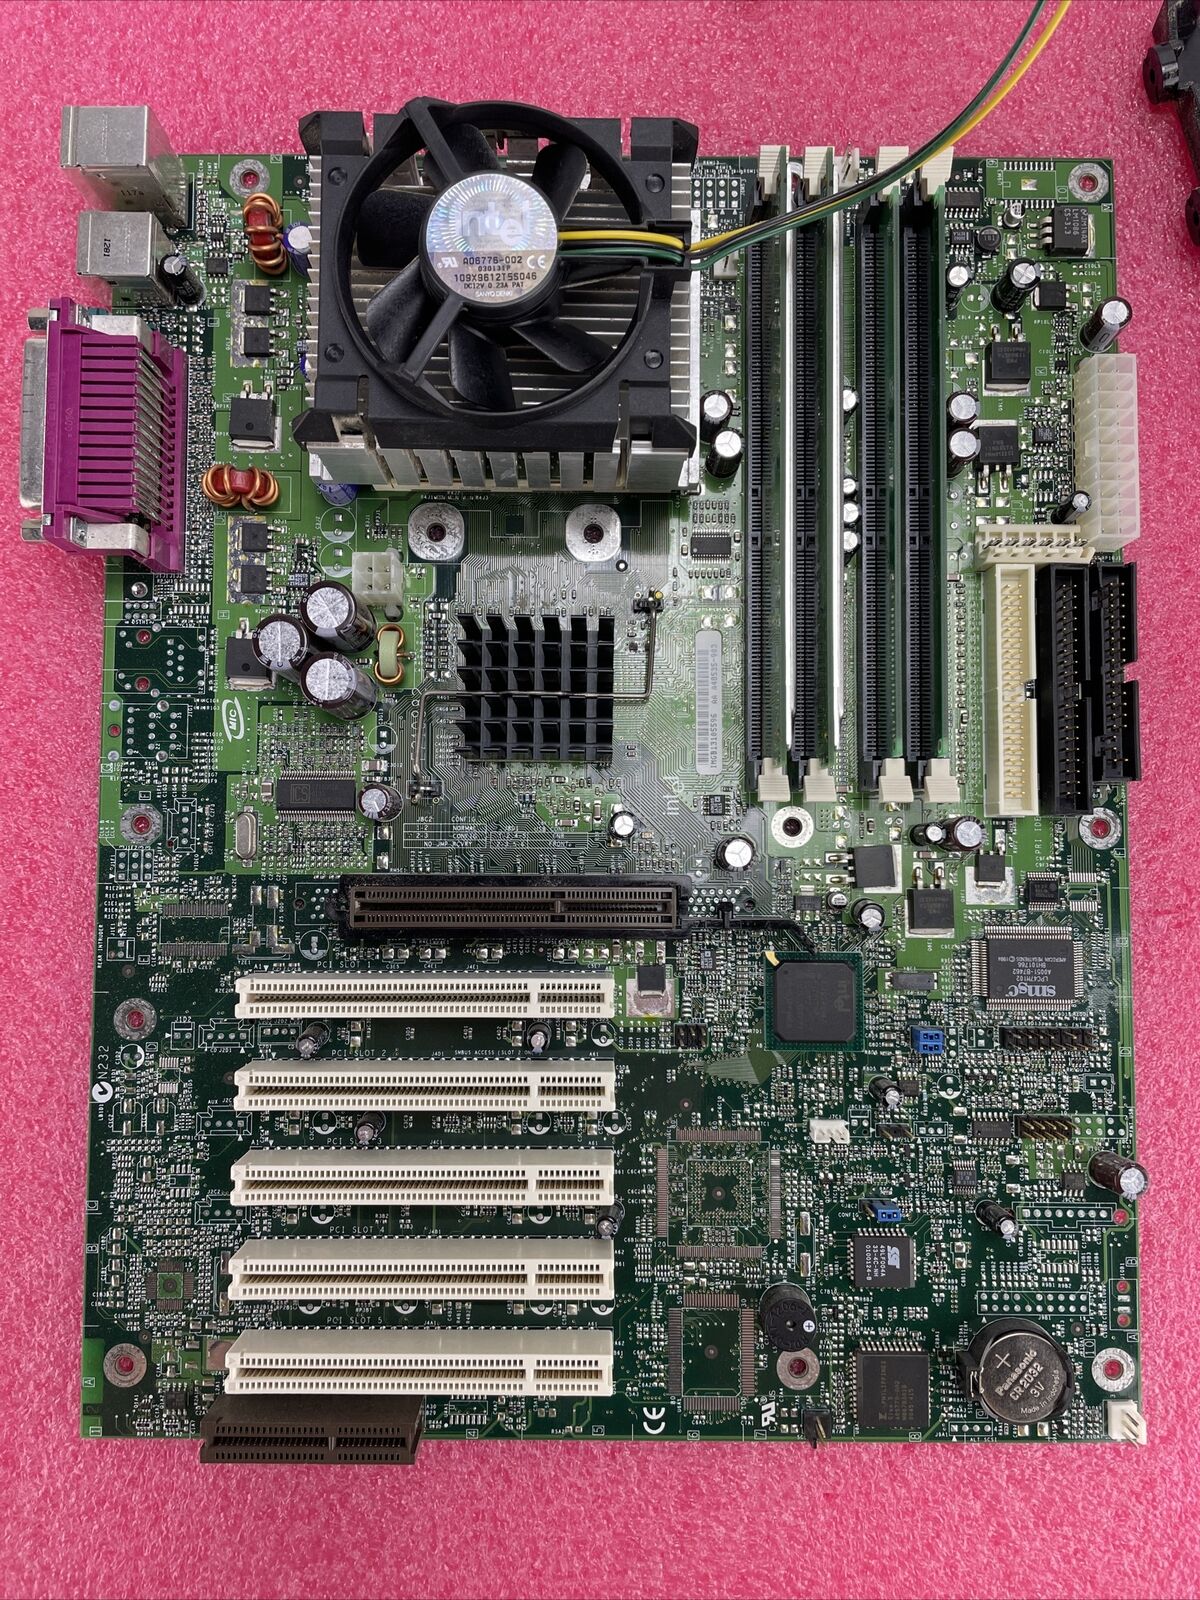 Intel D850GB Motherboard Intel Pentium II 466MHz 256MB RAM